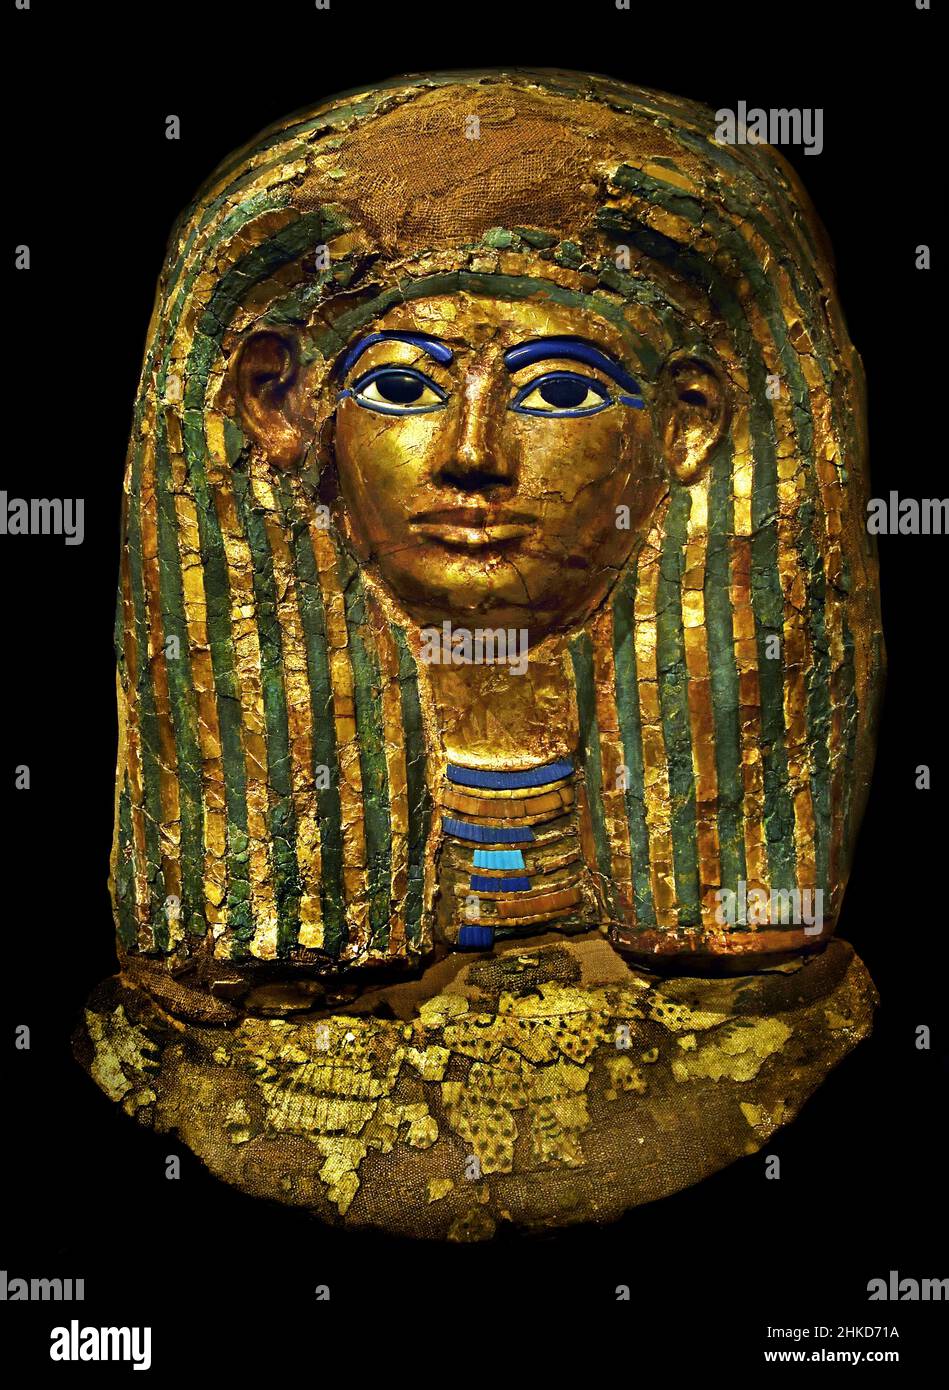 Masque funéraire égyptien de Cartonnage - tombeau de Kha, dynastie Theban mi-18th (1550 à 1292 av. J.-C.), Egypte (Museo Egizio di Torino Italie) Banque D'Images